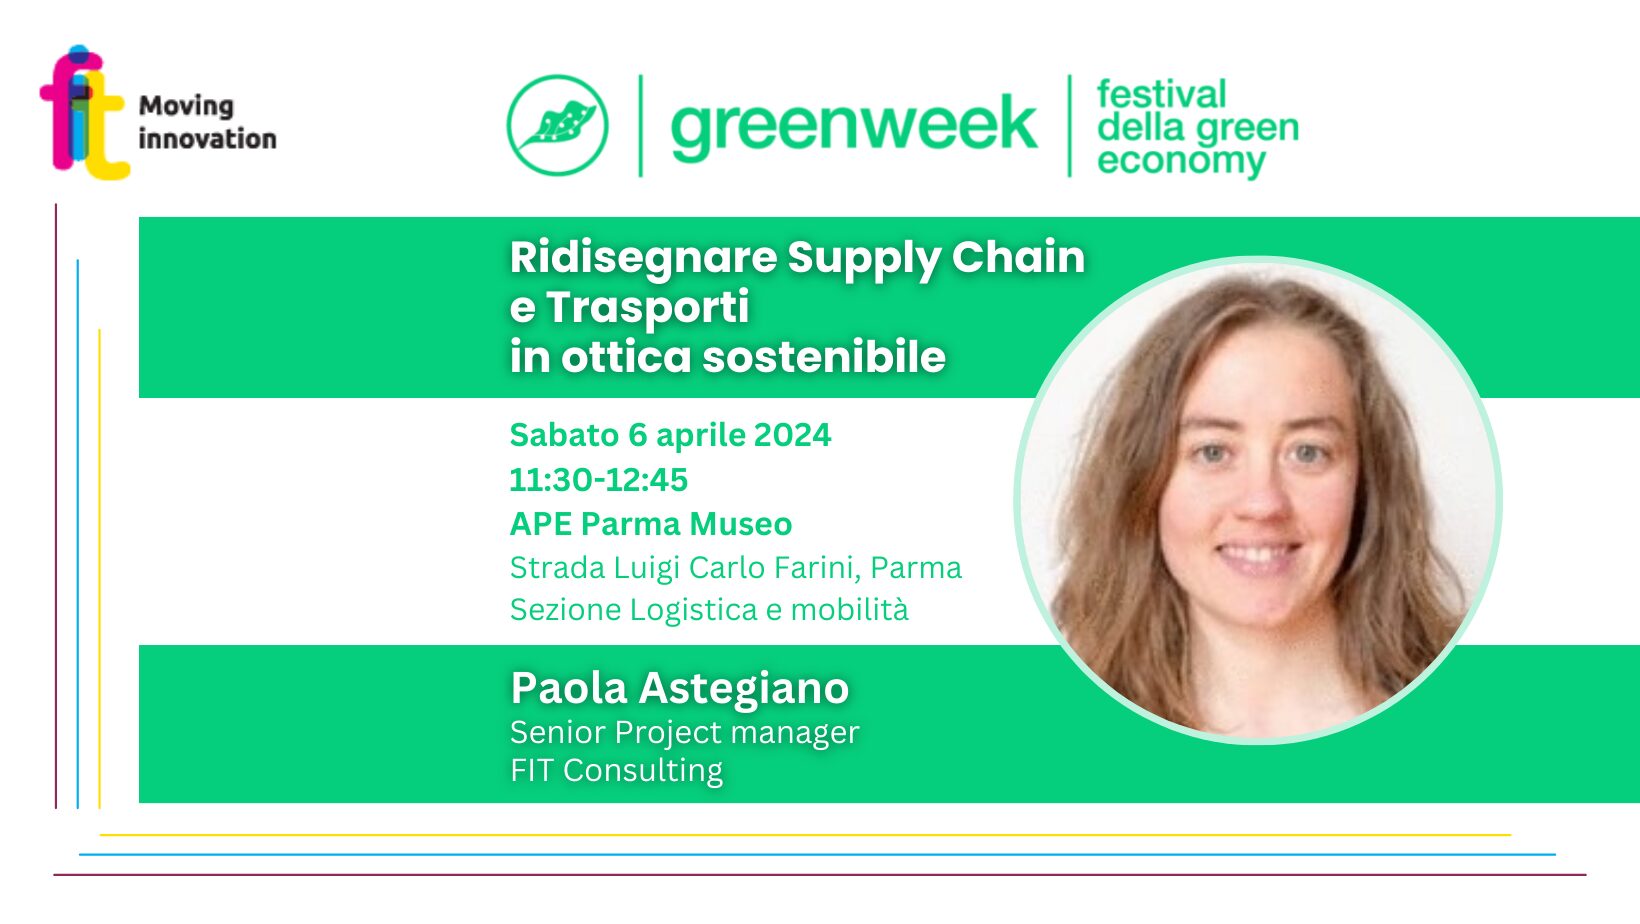 Supply Chain e Trasporti sostenibili, se ne parla sabato 6 aprile alla Parma Green Week con Paola Astegiano (FIT)